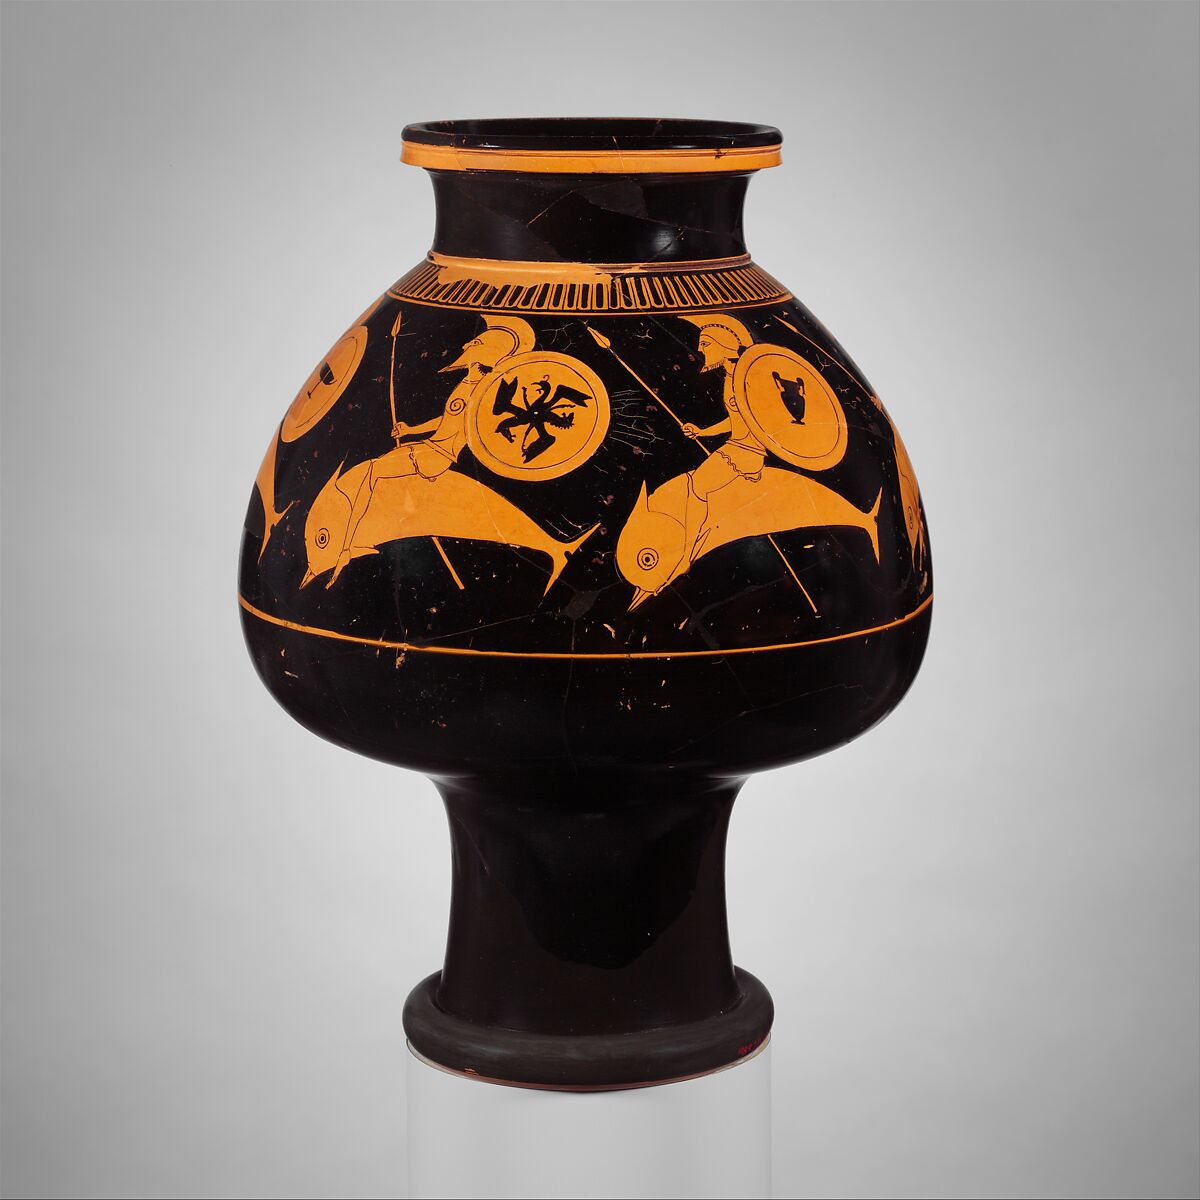 Terracotta psykter (vase for cooling wine)